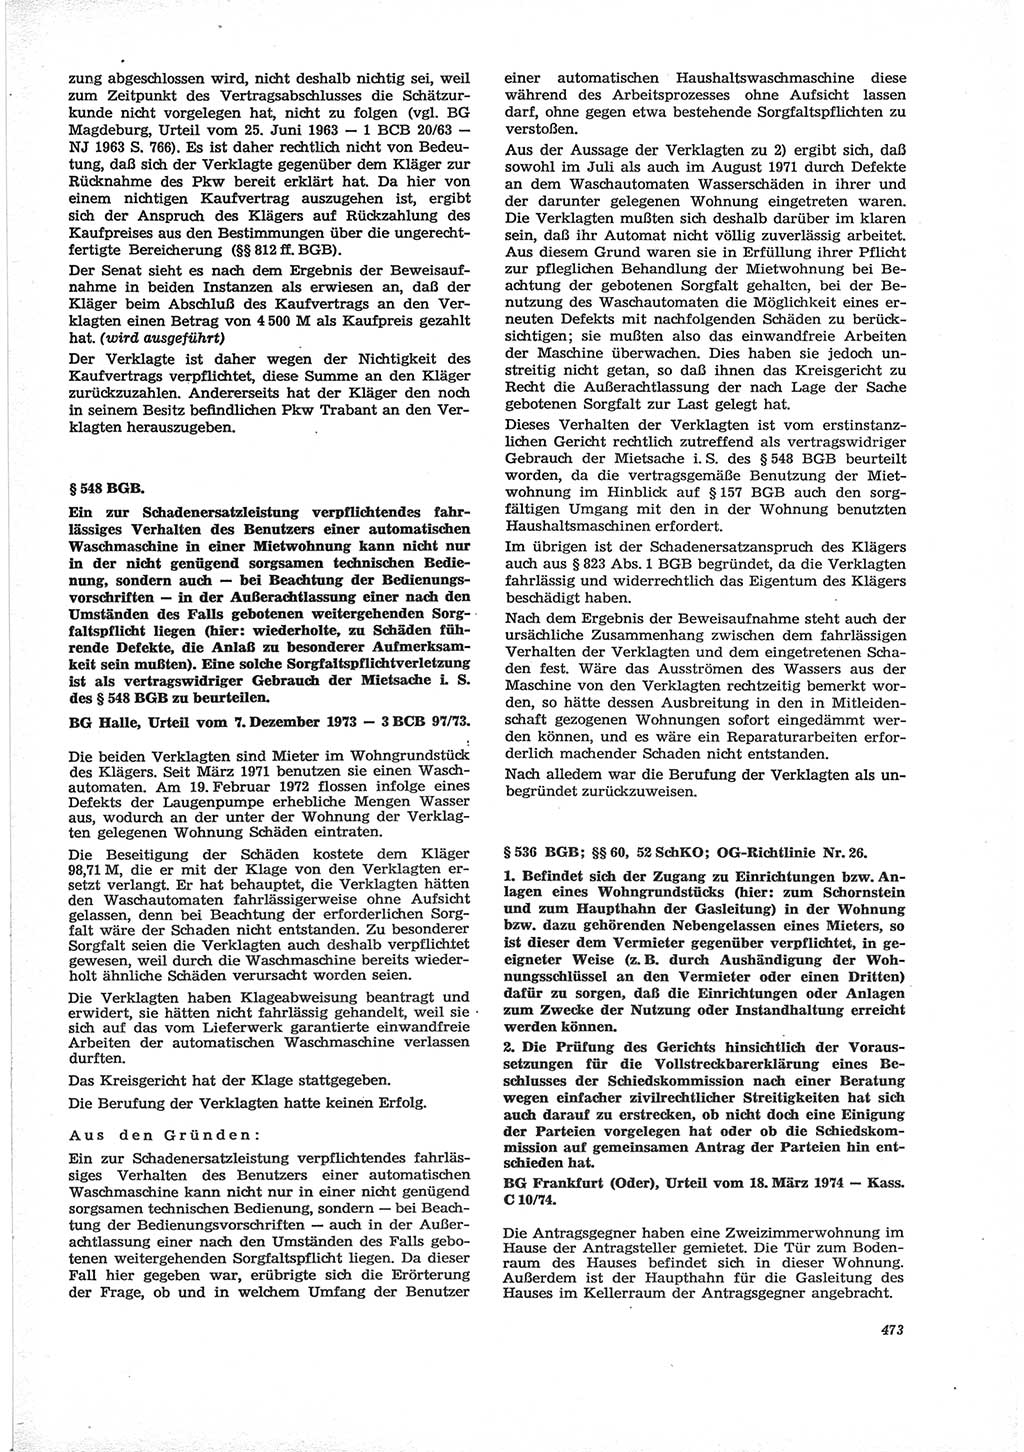 Neue Justiz (NJ), Zeitschrift für Recht und Rechtswissenschaft [Deutsche Demokratische Republik (DDR)], 28. Jahrgang 1974, Seite 473 (NJ DDR 1974, S. 473)